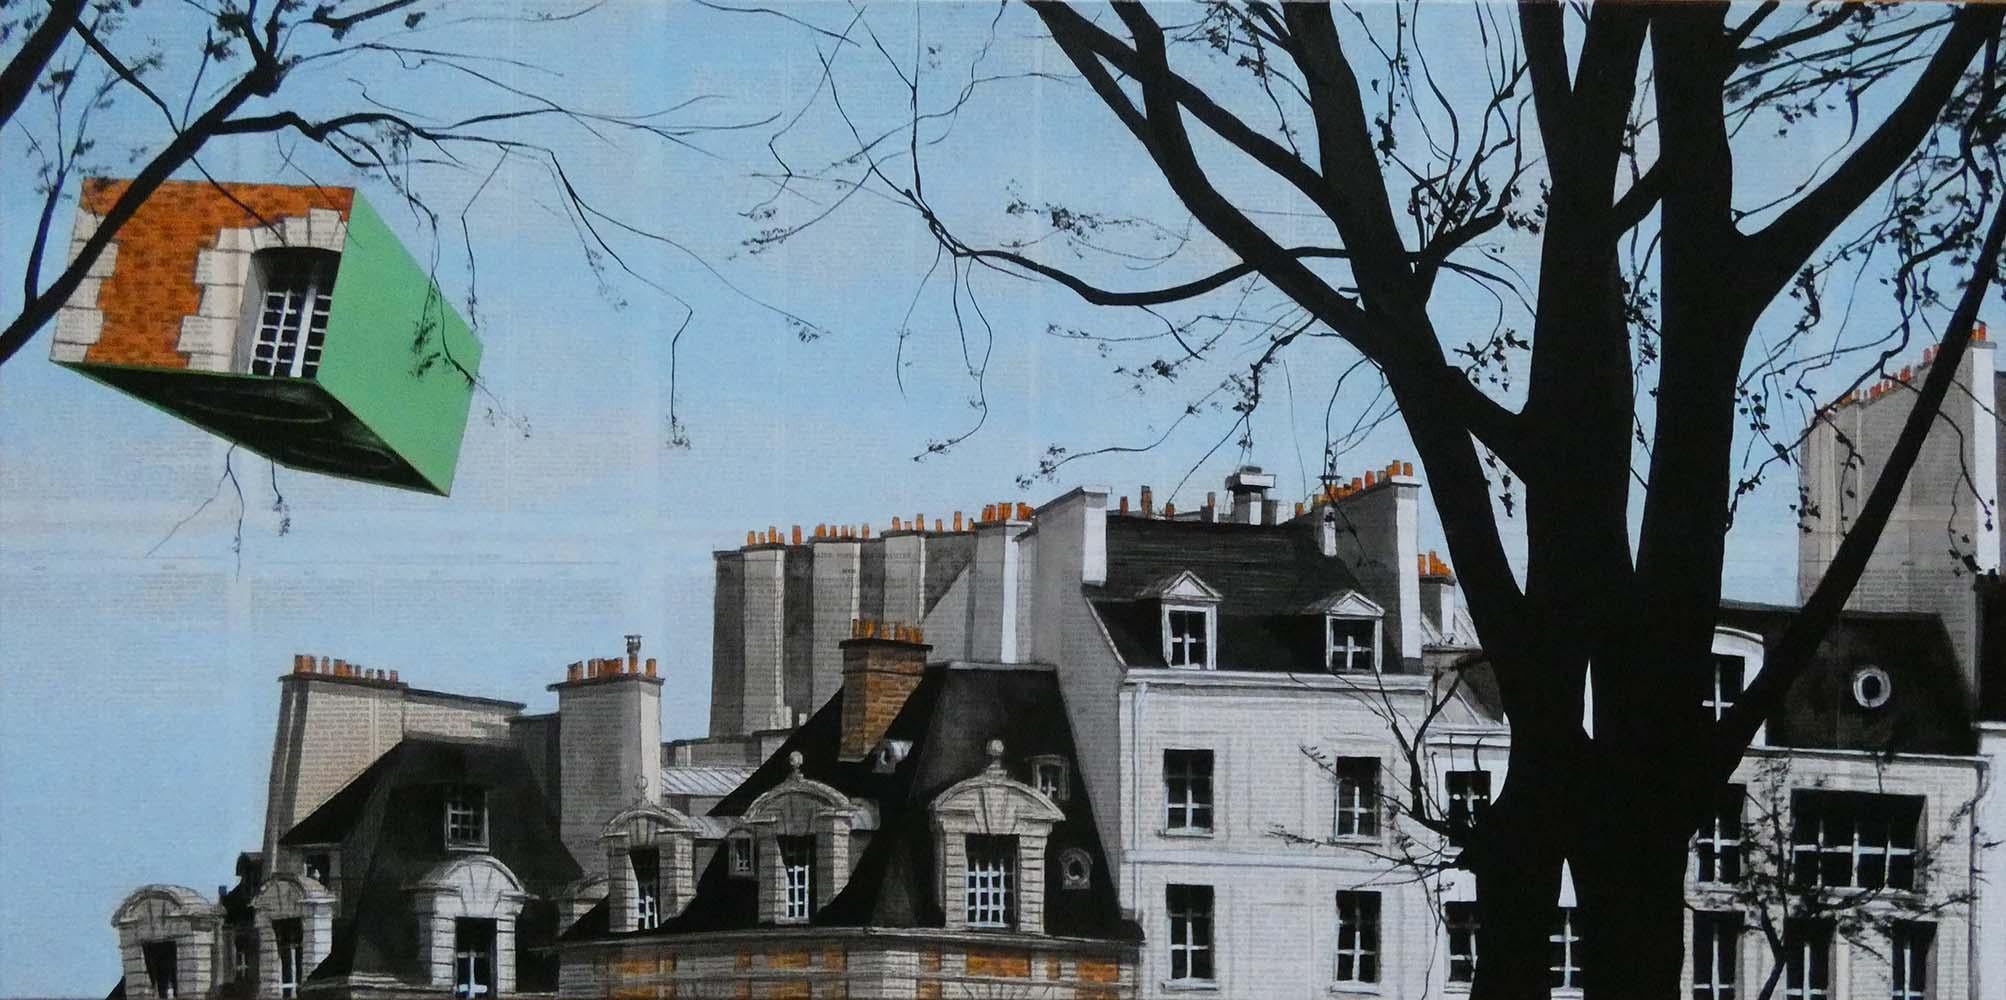 Guillaume Chansarel (Guiyome) Landscape Painting - Epreuve de l'Irréel n°8/19 by Guillaume Chansarel- Urban landscape painting